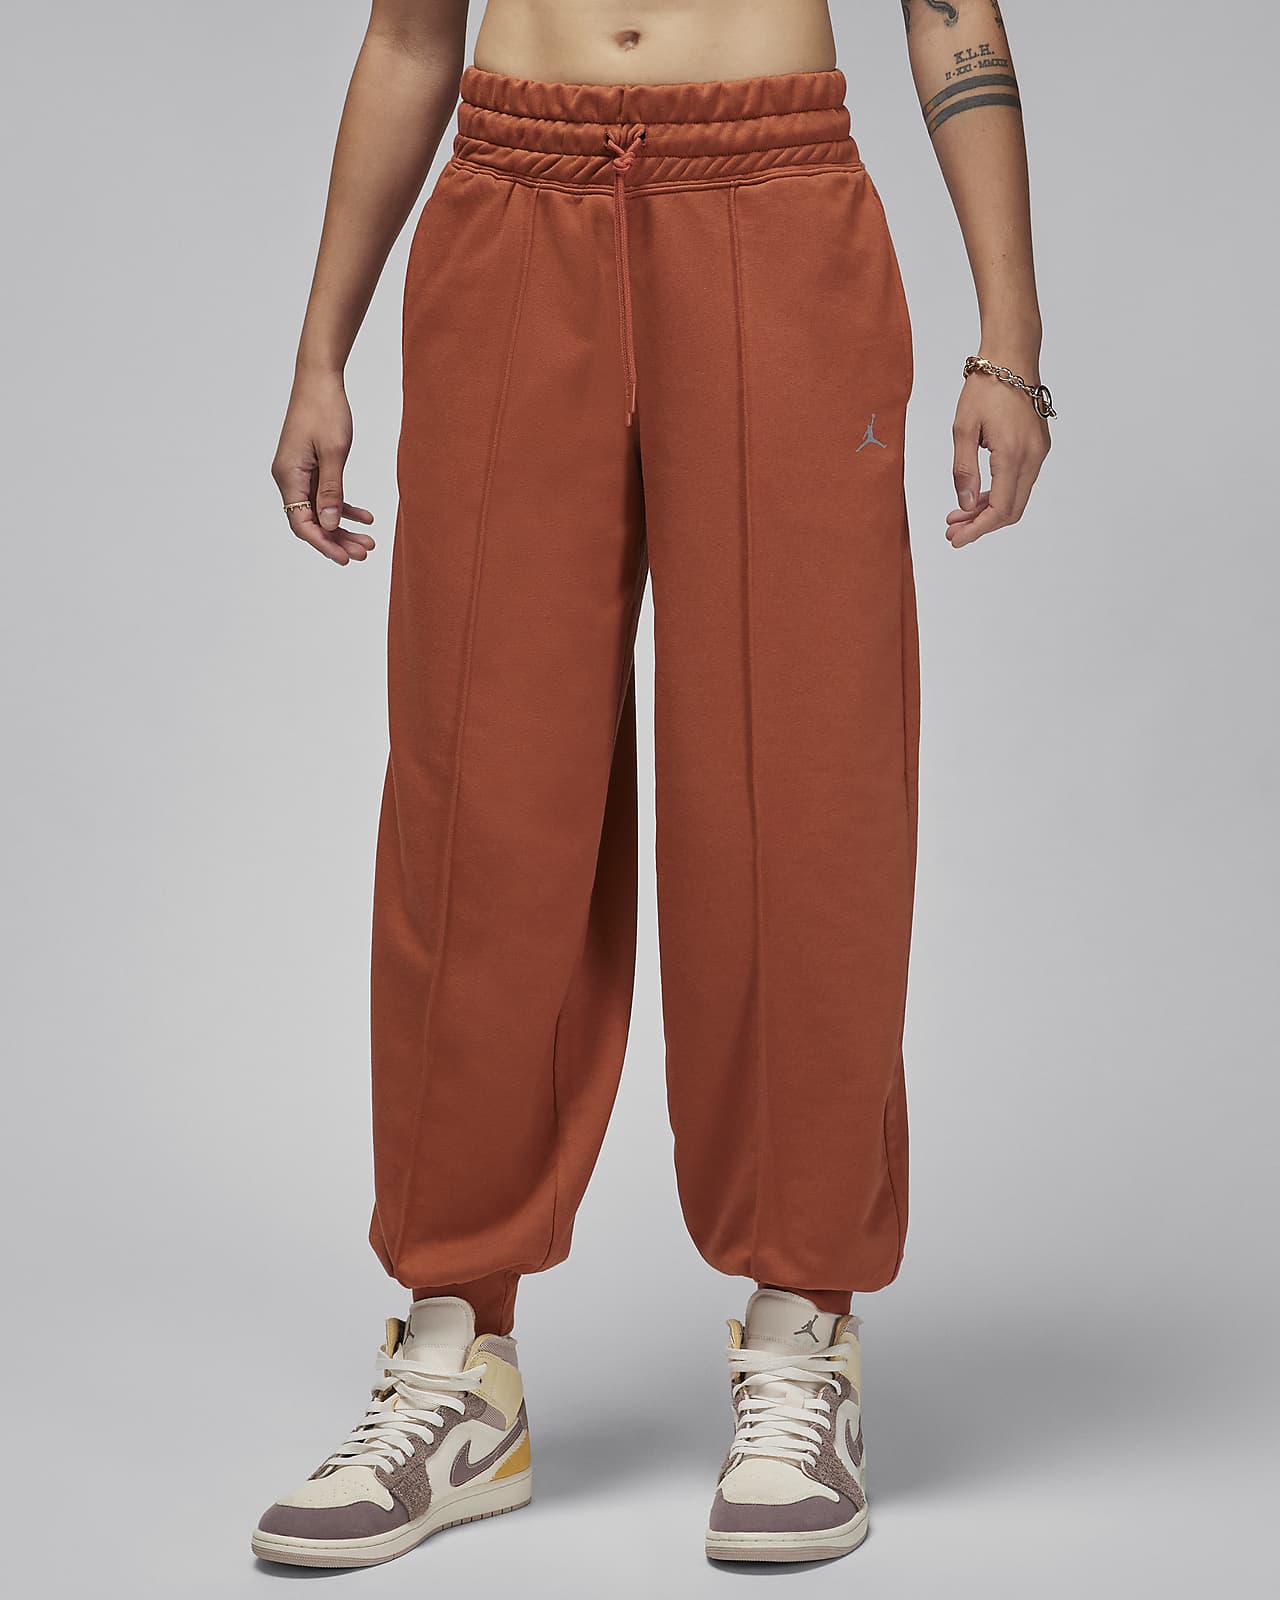 Jordan Sport Pantalons de teixit Fleece estampats - Dona